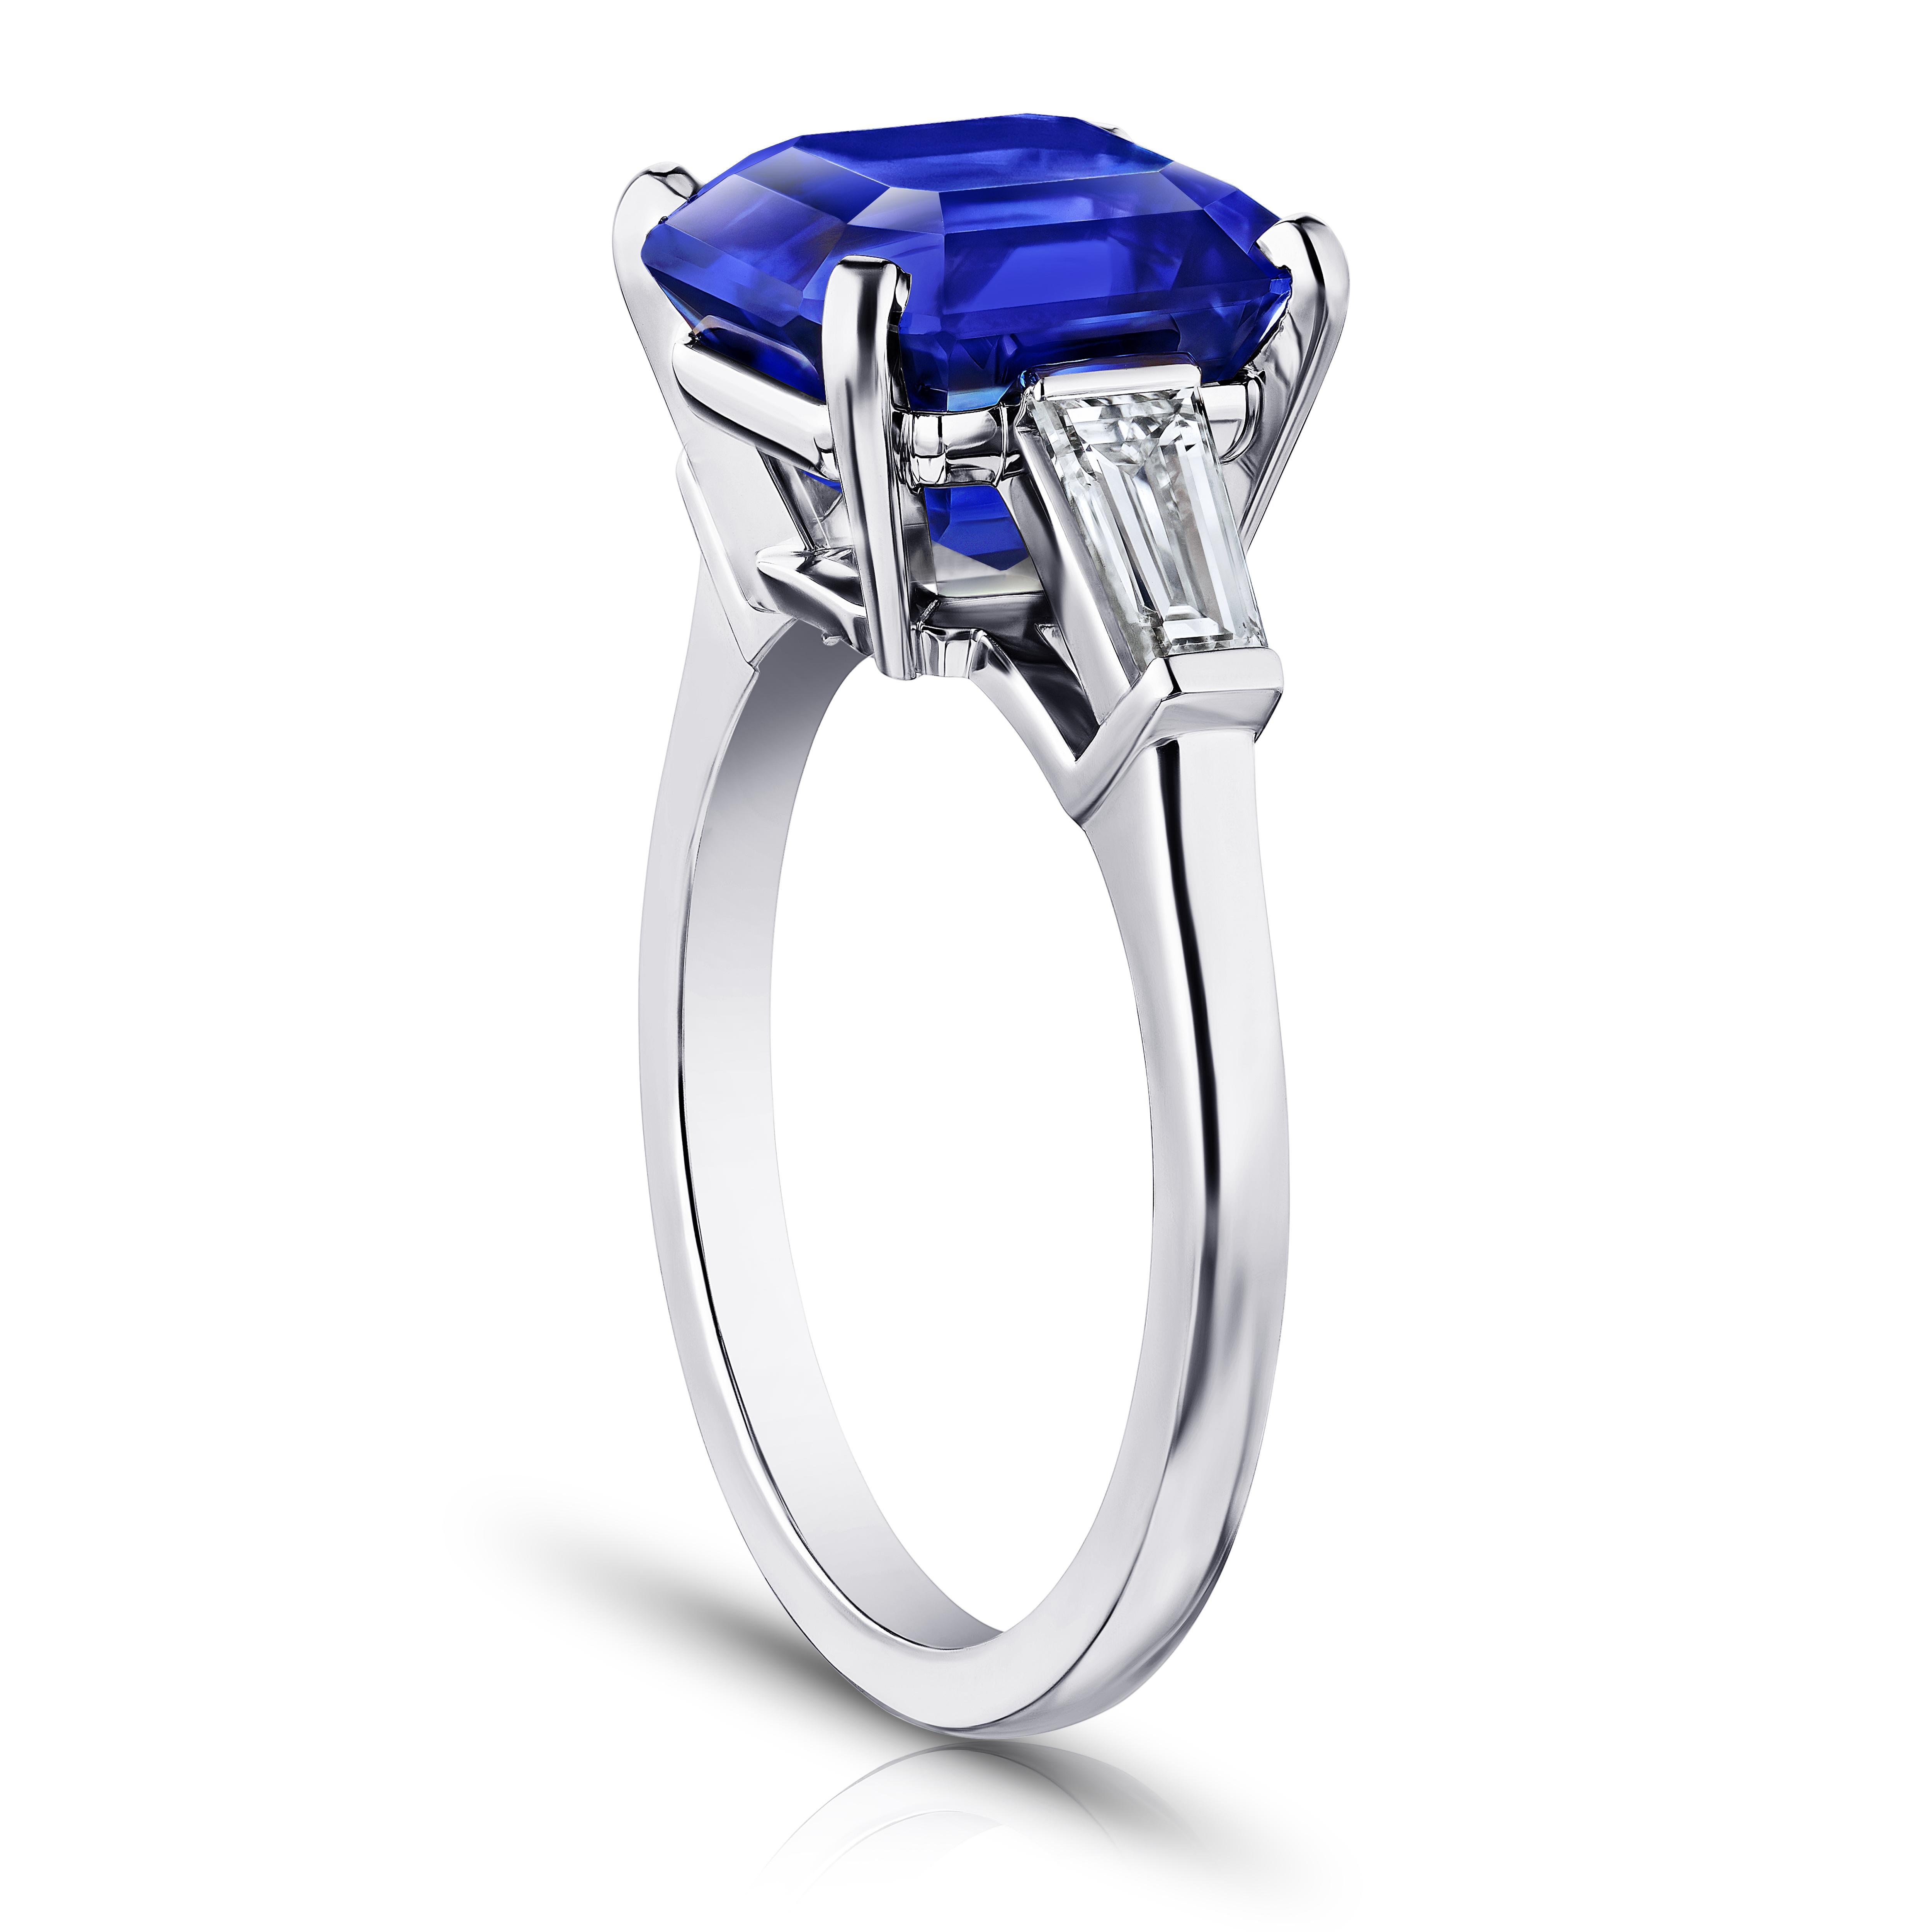 6.bague en platine ornée d'un saphir bleu émeraude carré de 16 carats et de diamants baguettes effilés de 0,55 carats. Taille 7.
